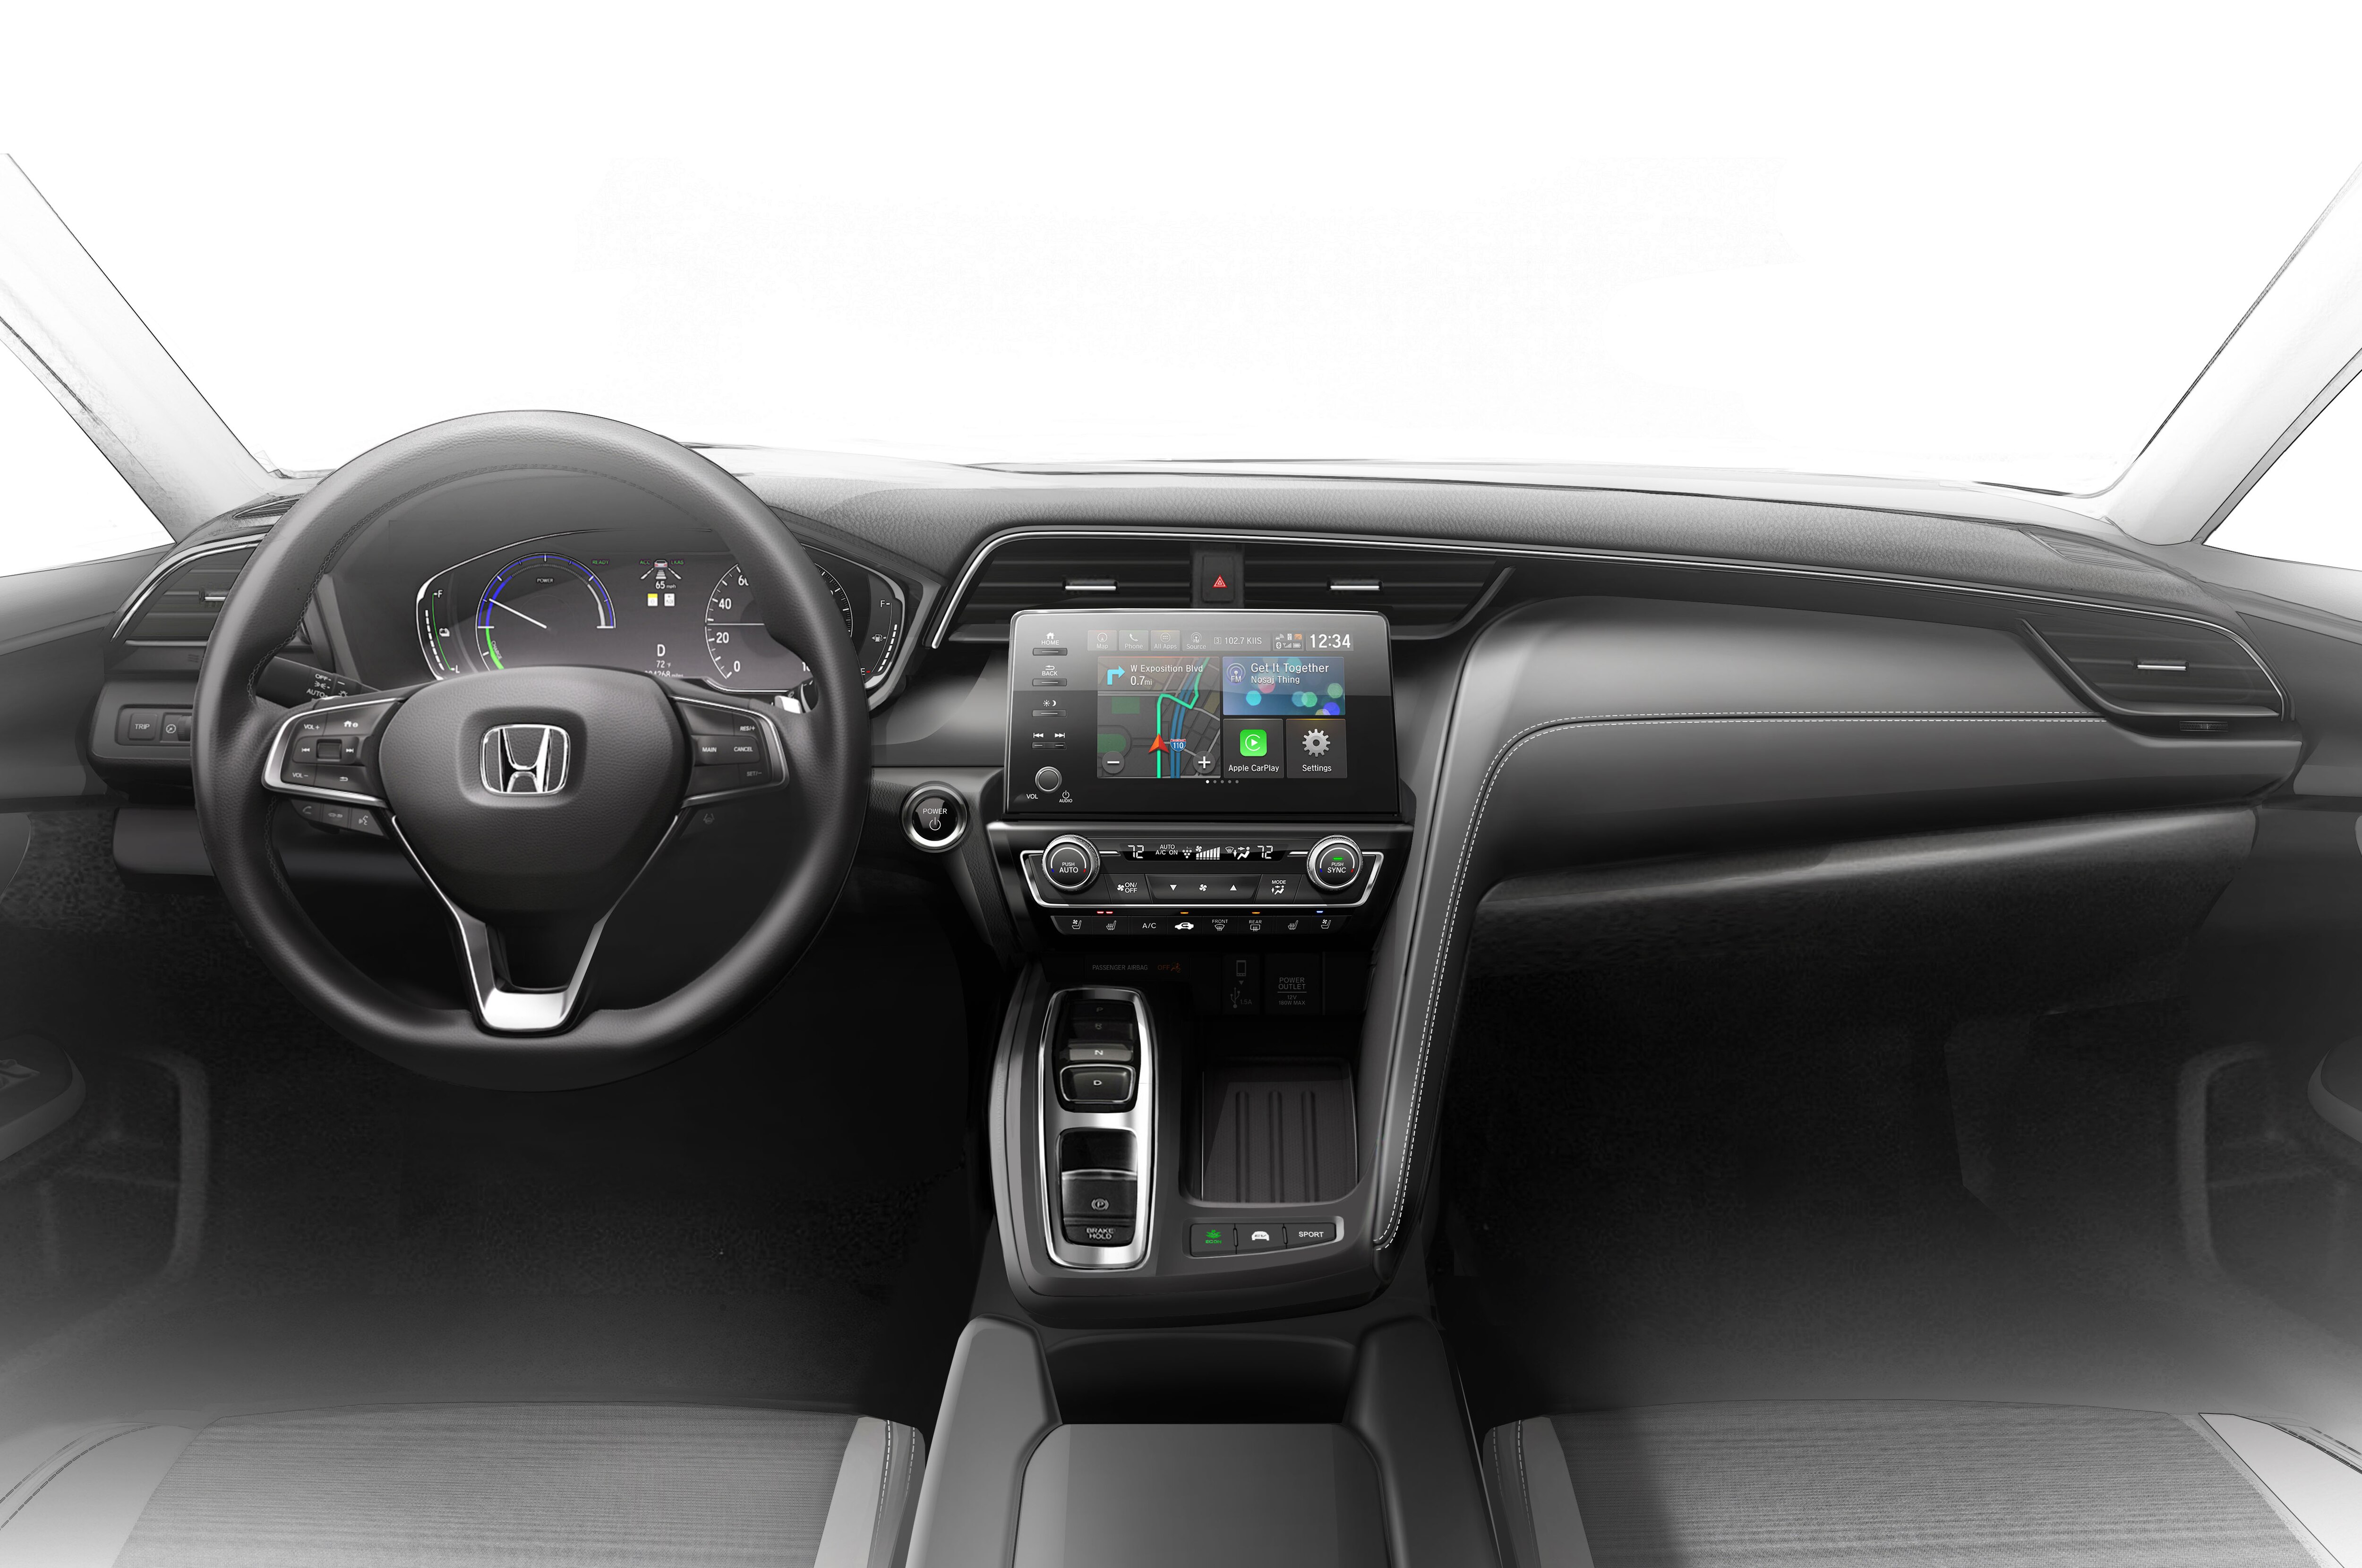 Honda Insight interior specifications